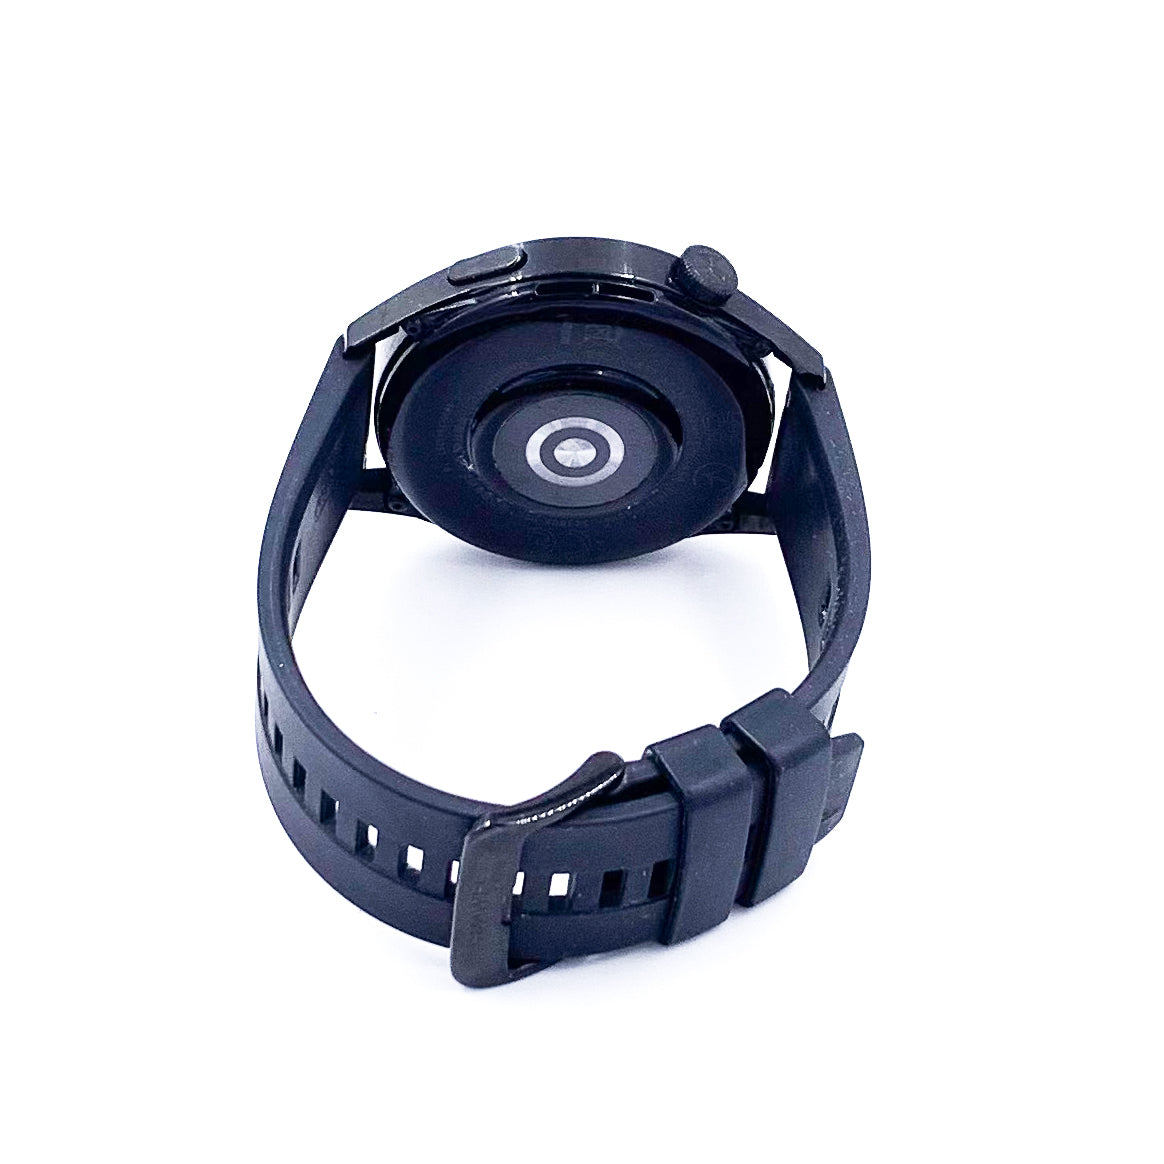 Smartwatch Huawei Watch Gt3 